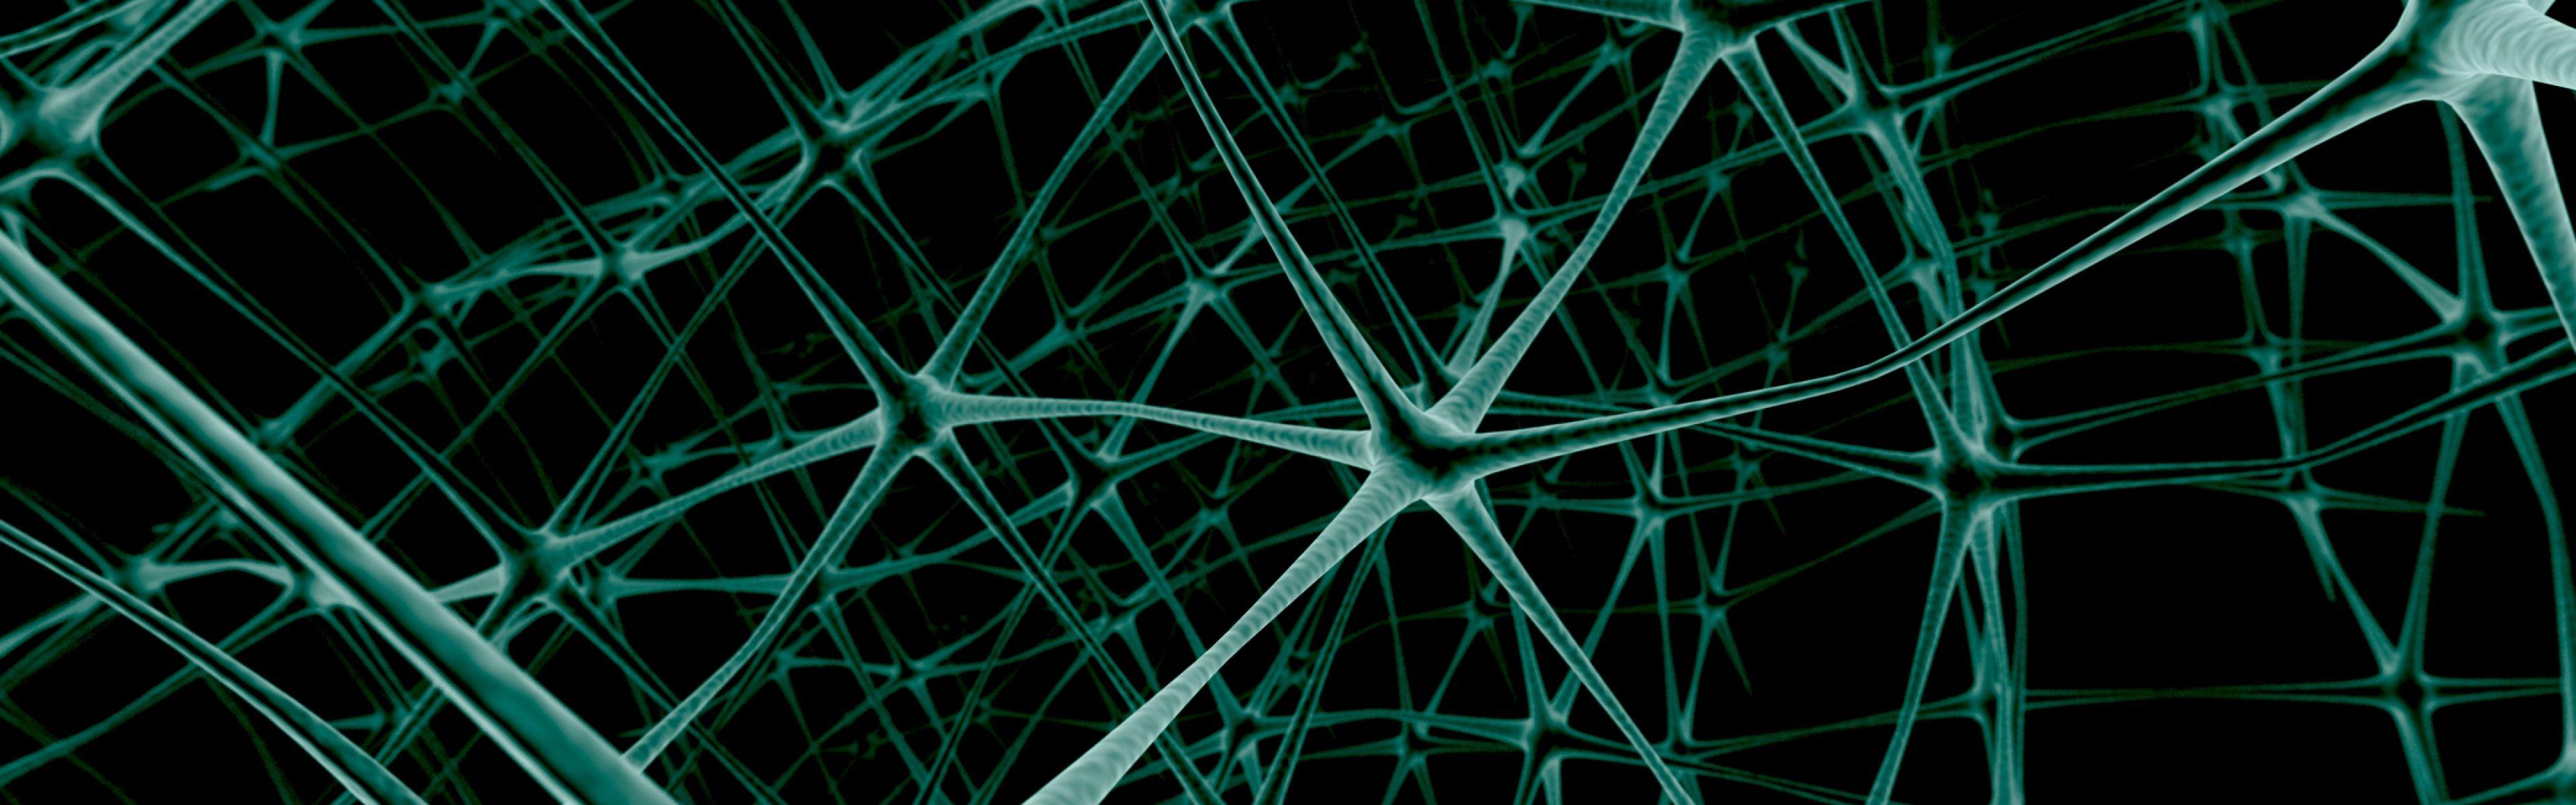 Neuron Wallpaper, Neuron Wallpaper Free Download